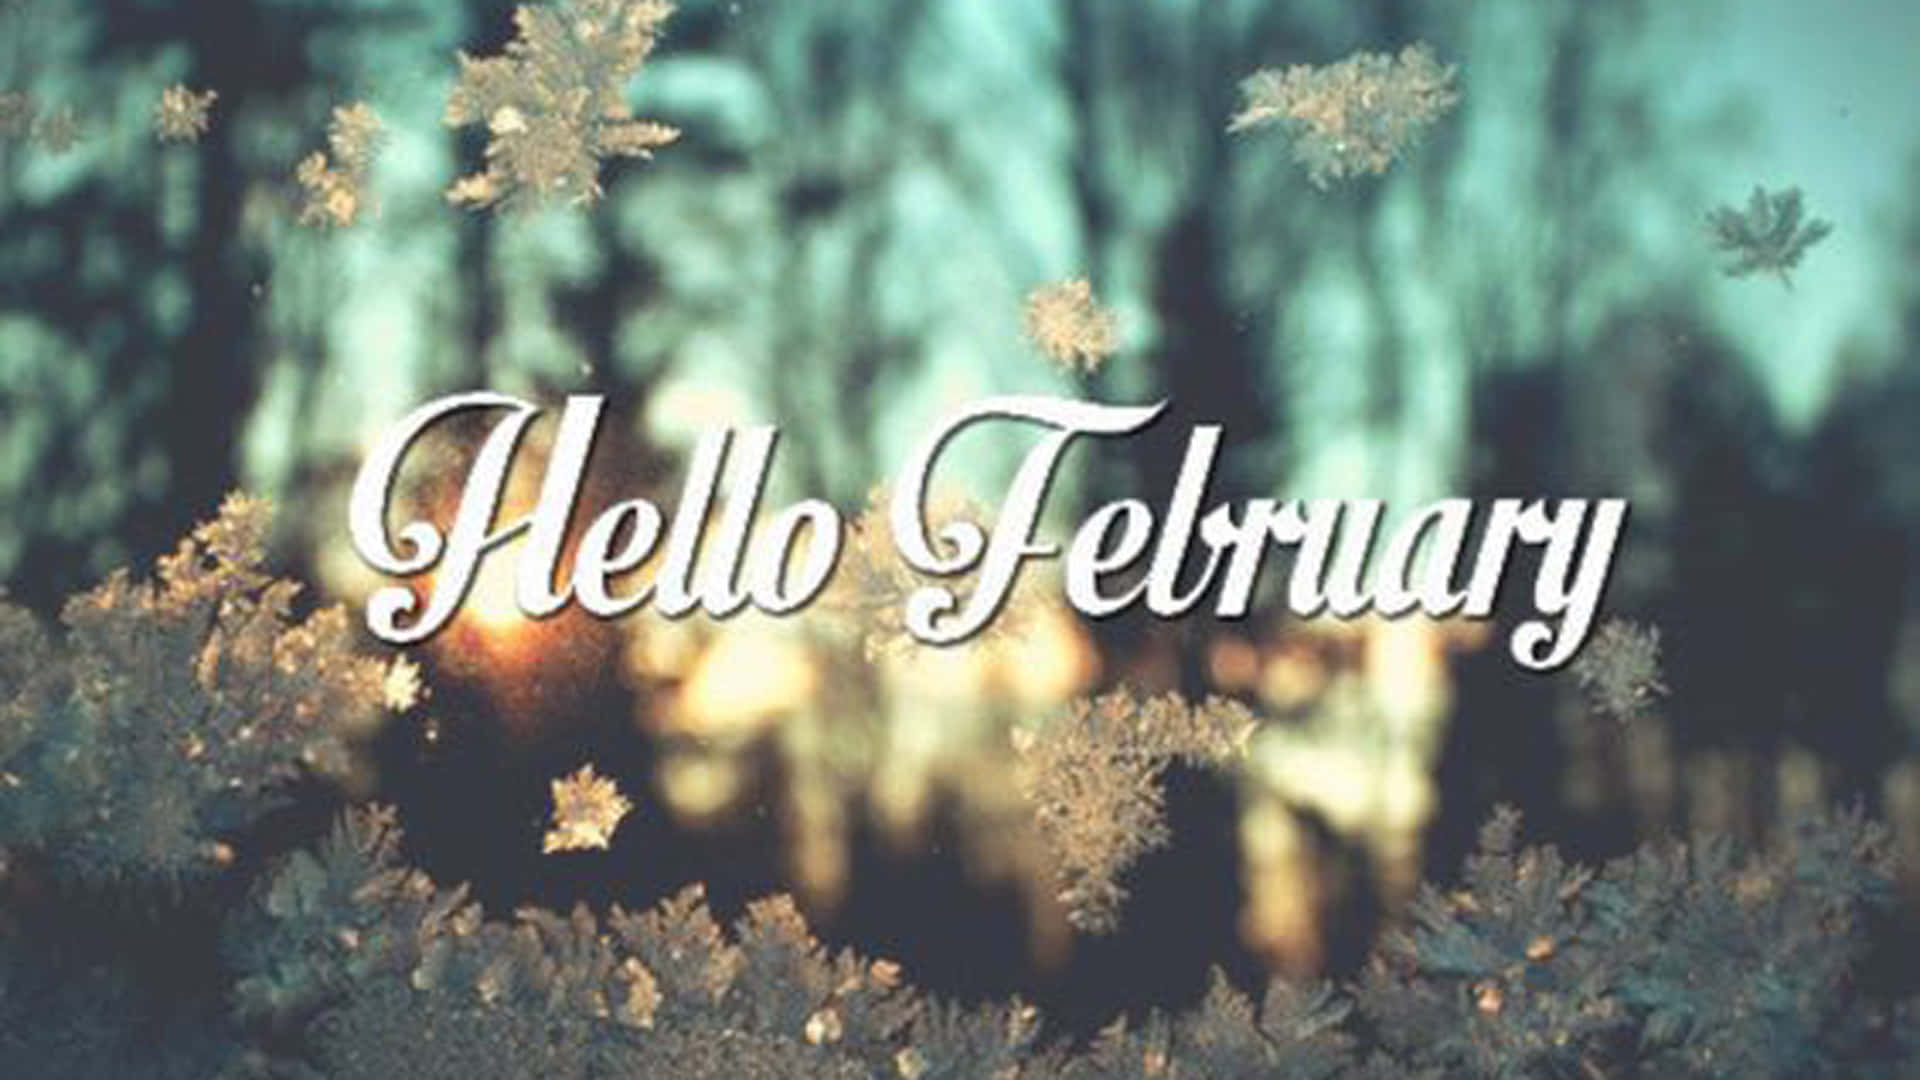 welcome february